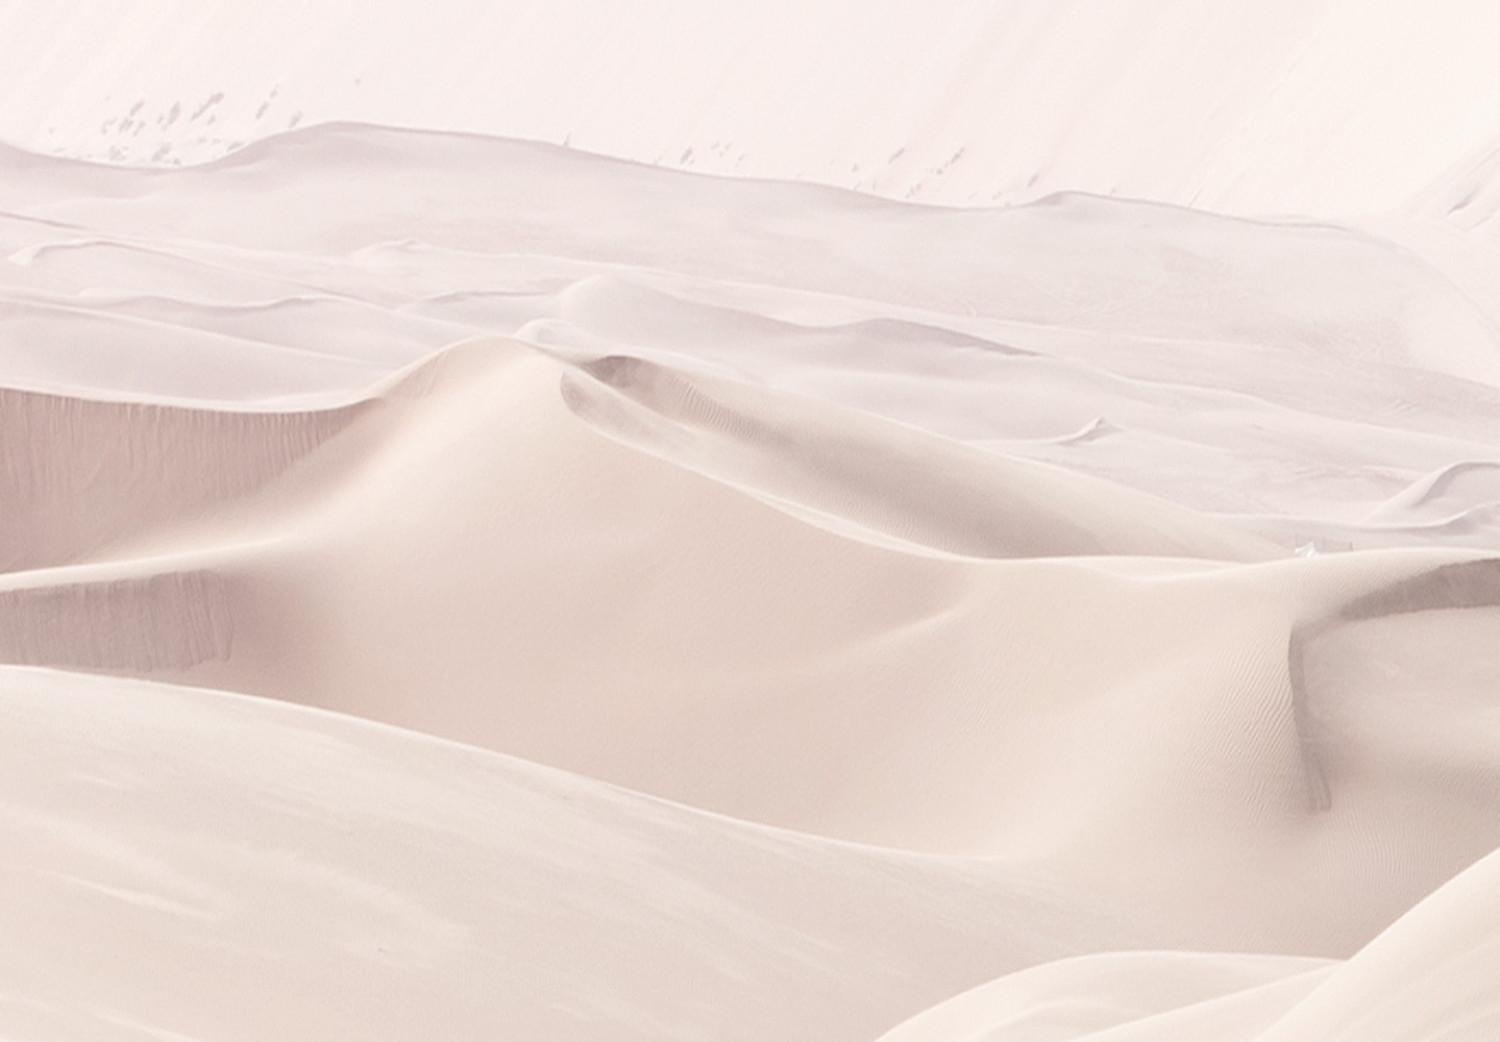 Cuadro moderno Tejido de arena (1 pieza) vertical - paisaje del desierto árabe